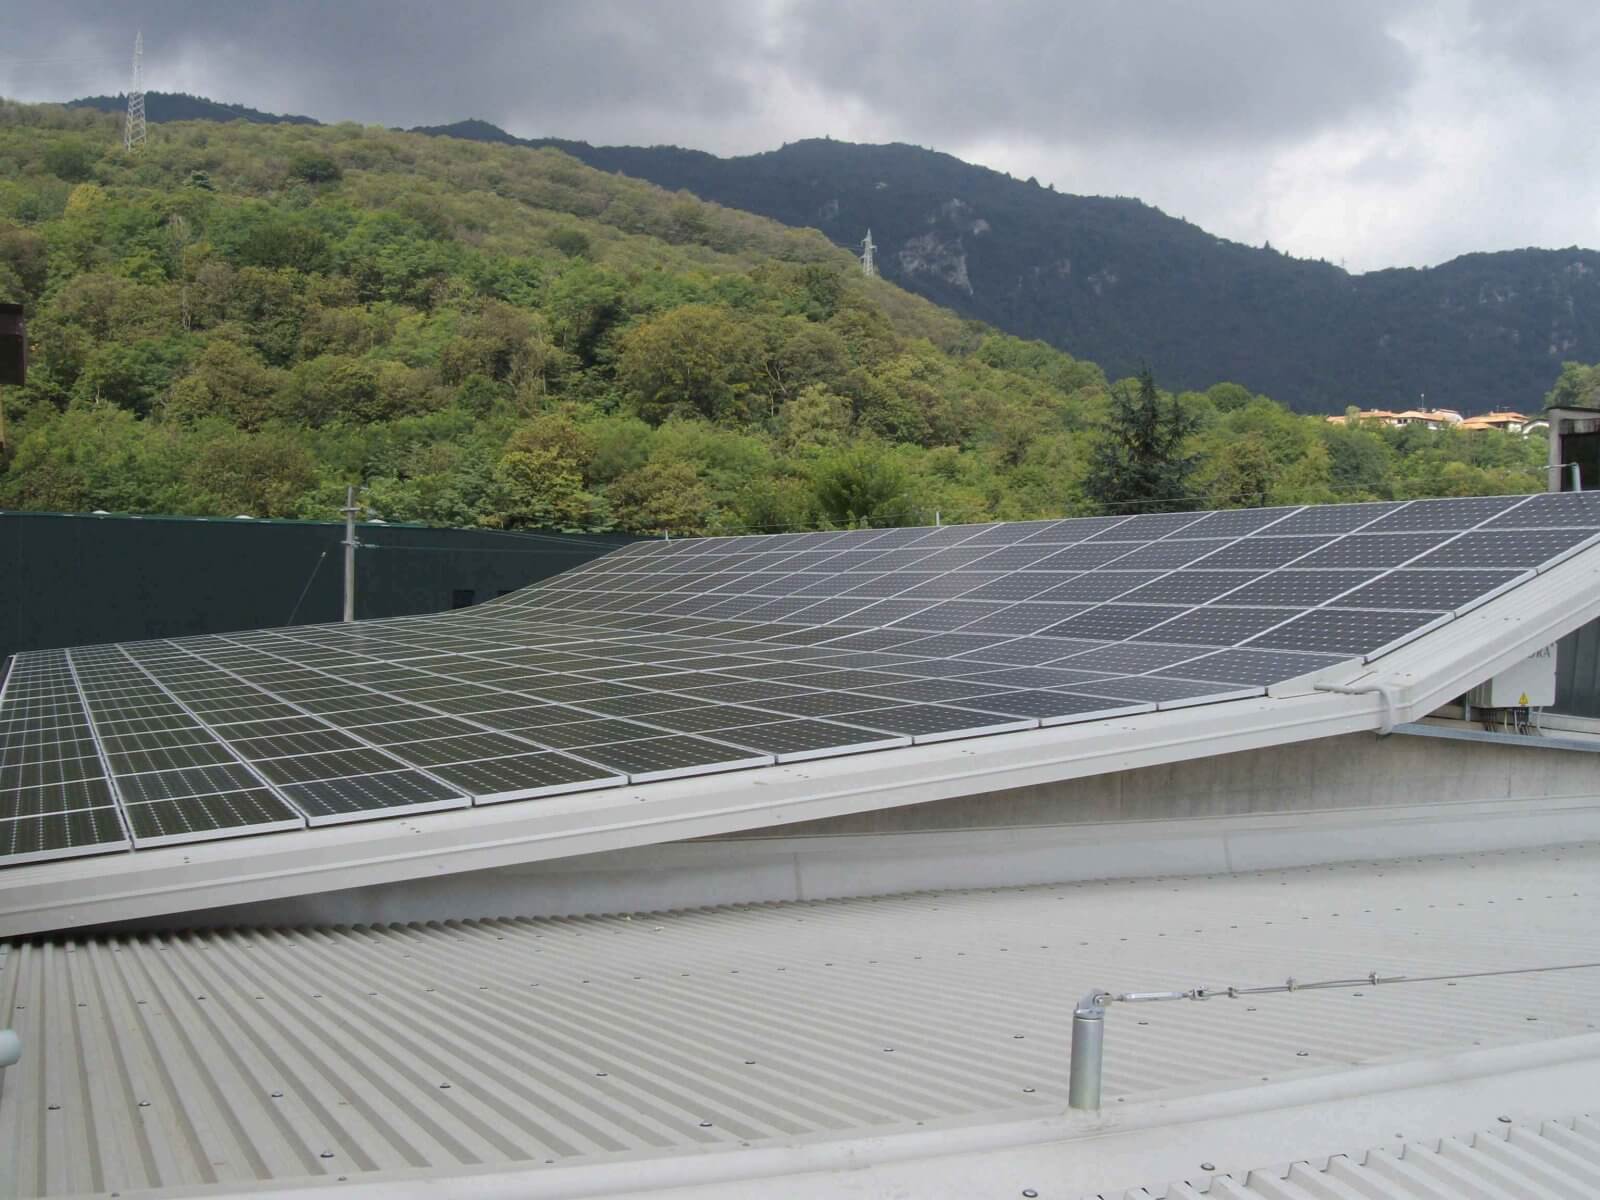 Sistema fotovoltaico cerca de Novara